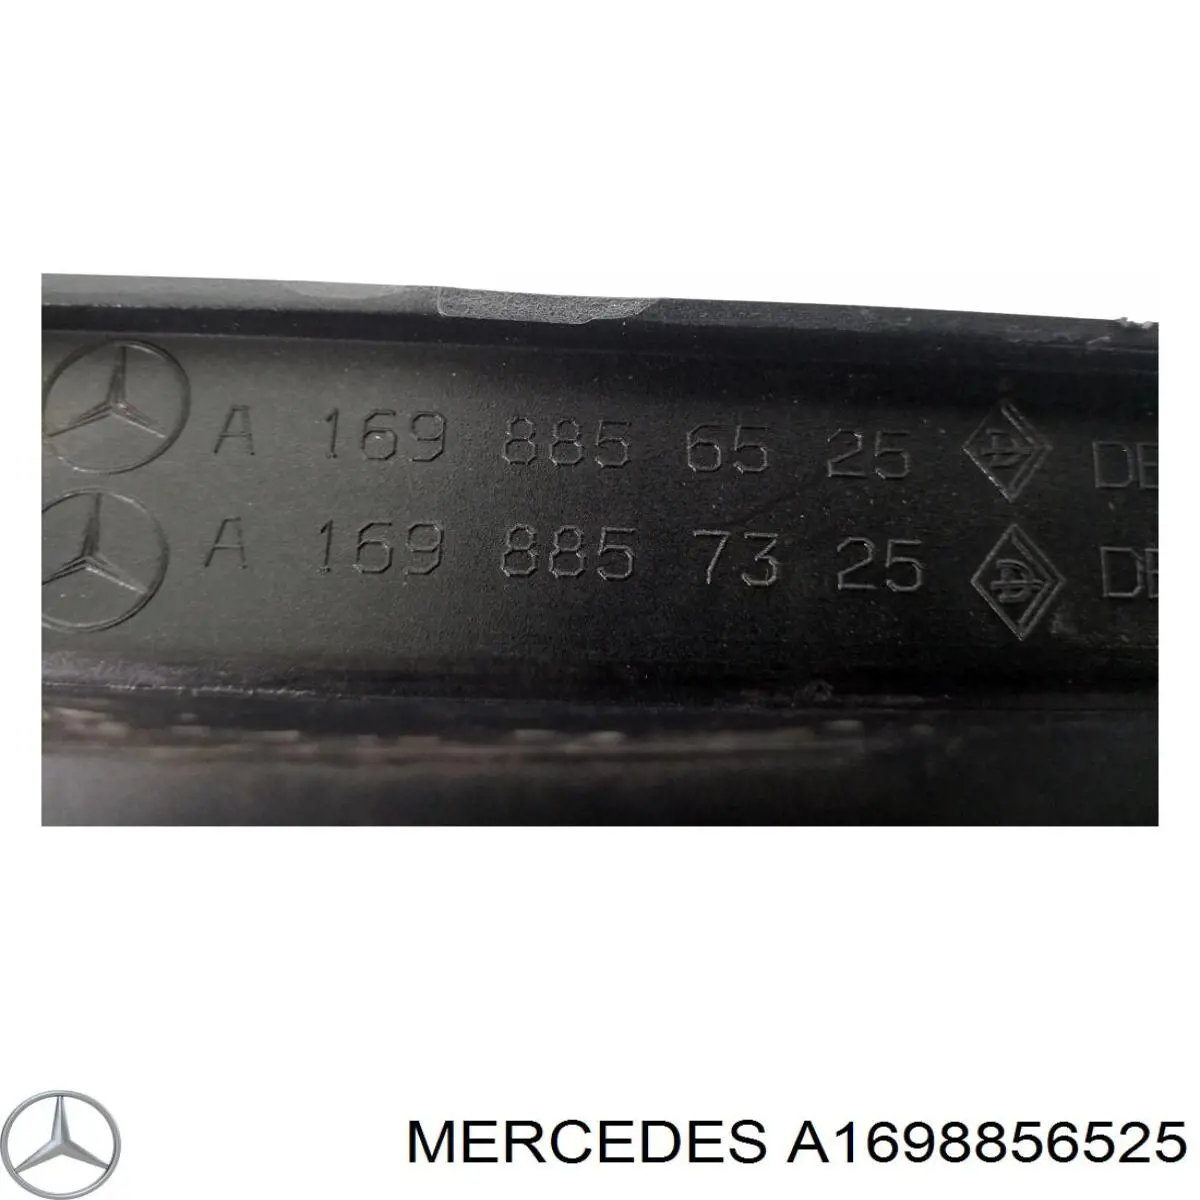 A1698856525 Mercedes бампер задний